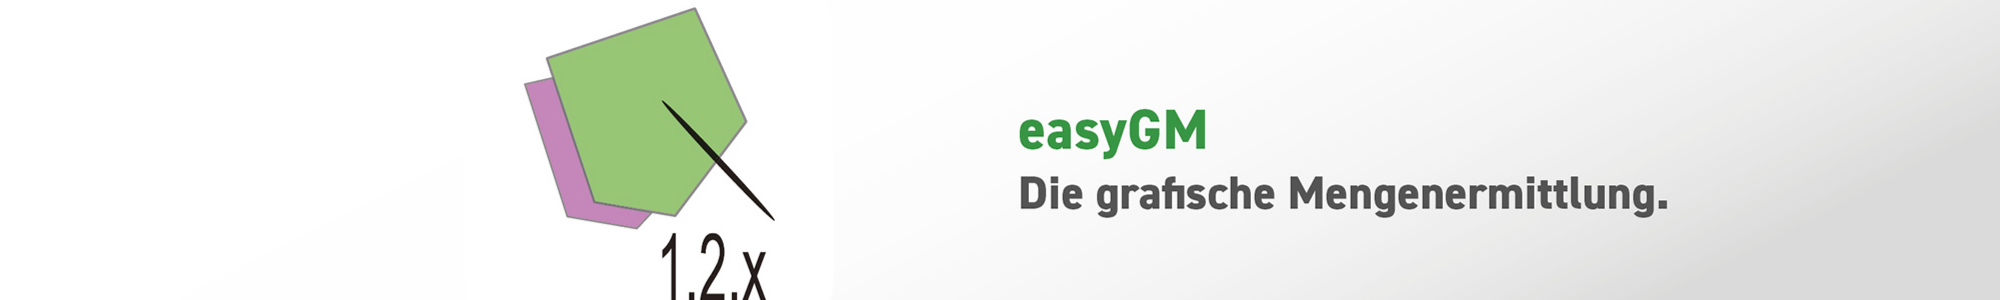 easyGM - isl-kocher GmbH